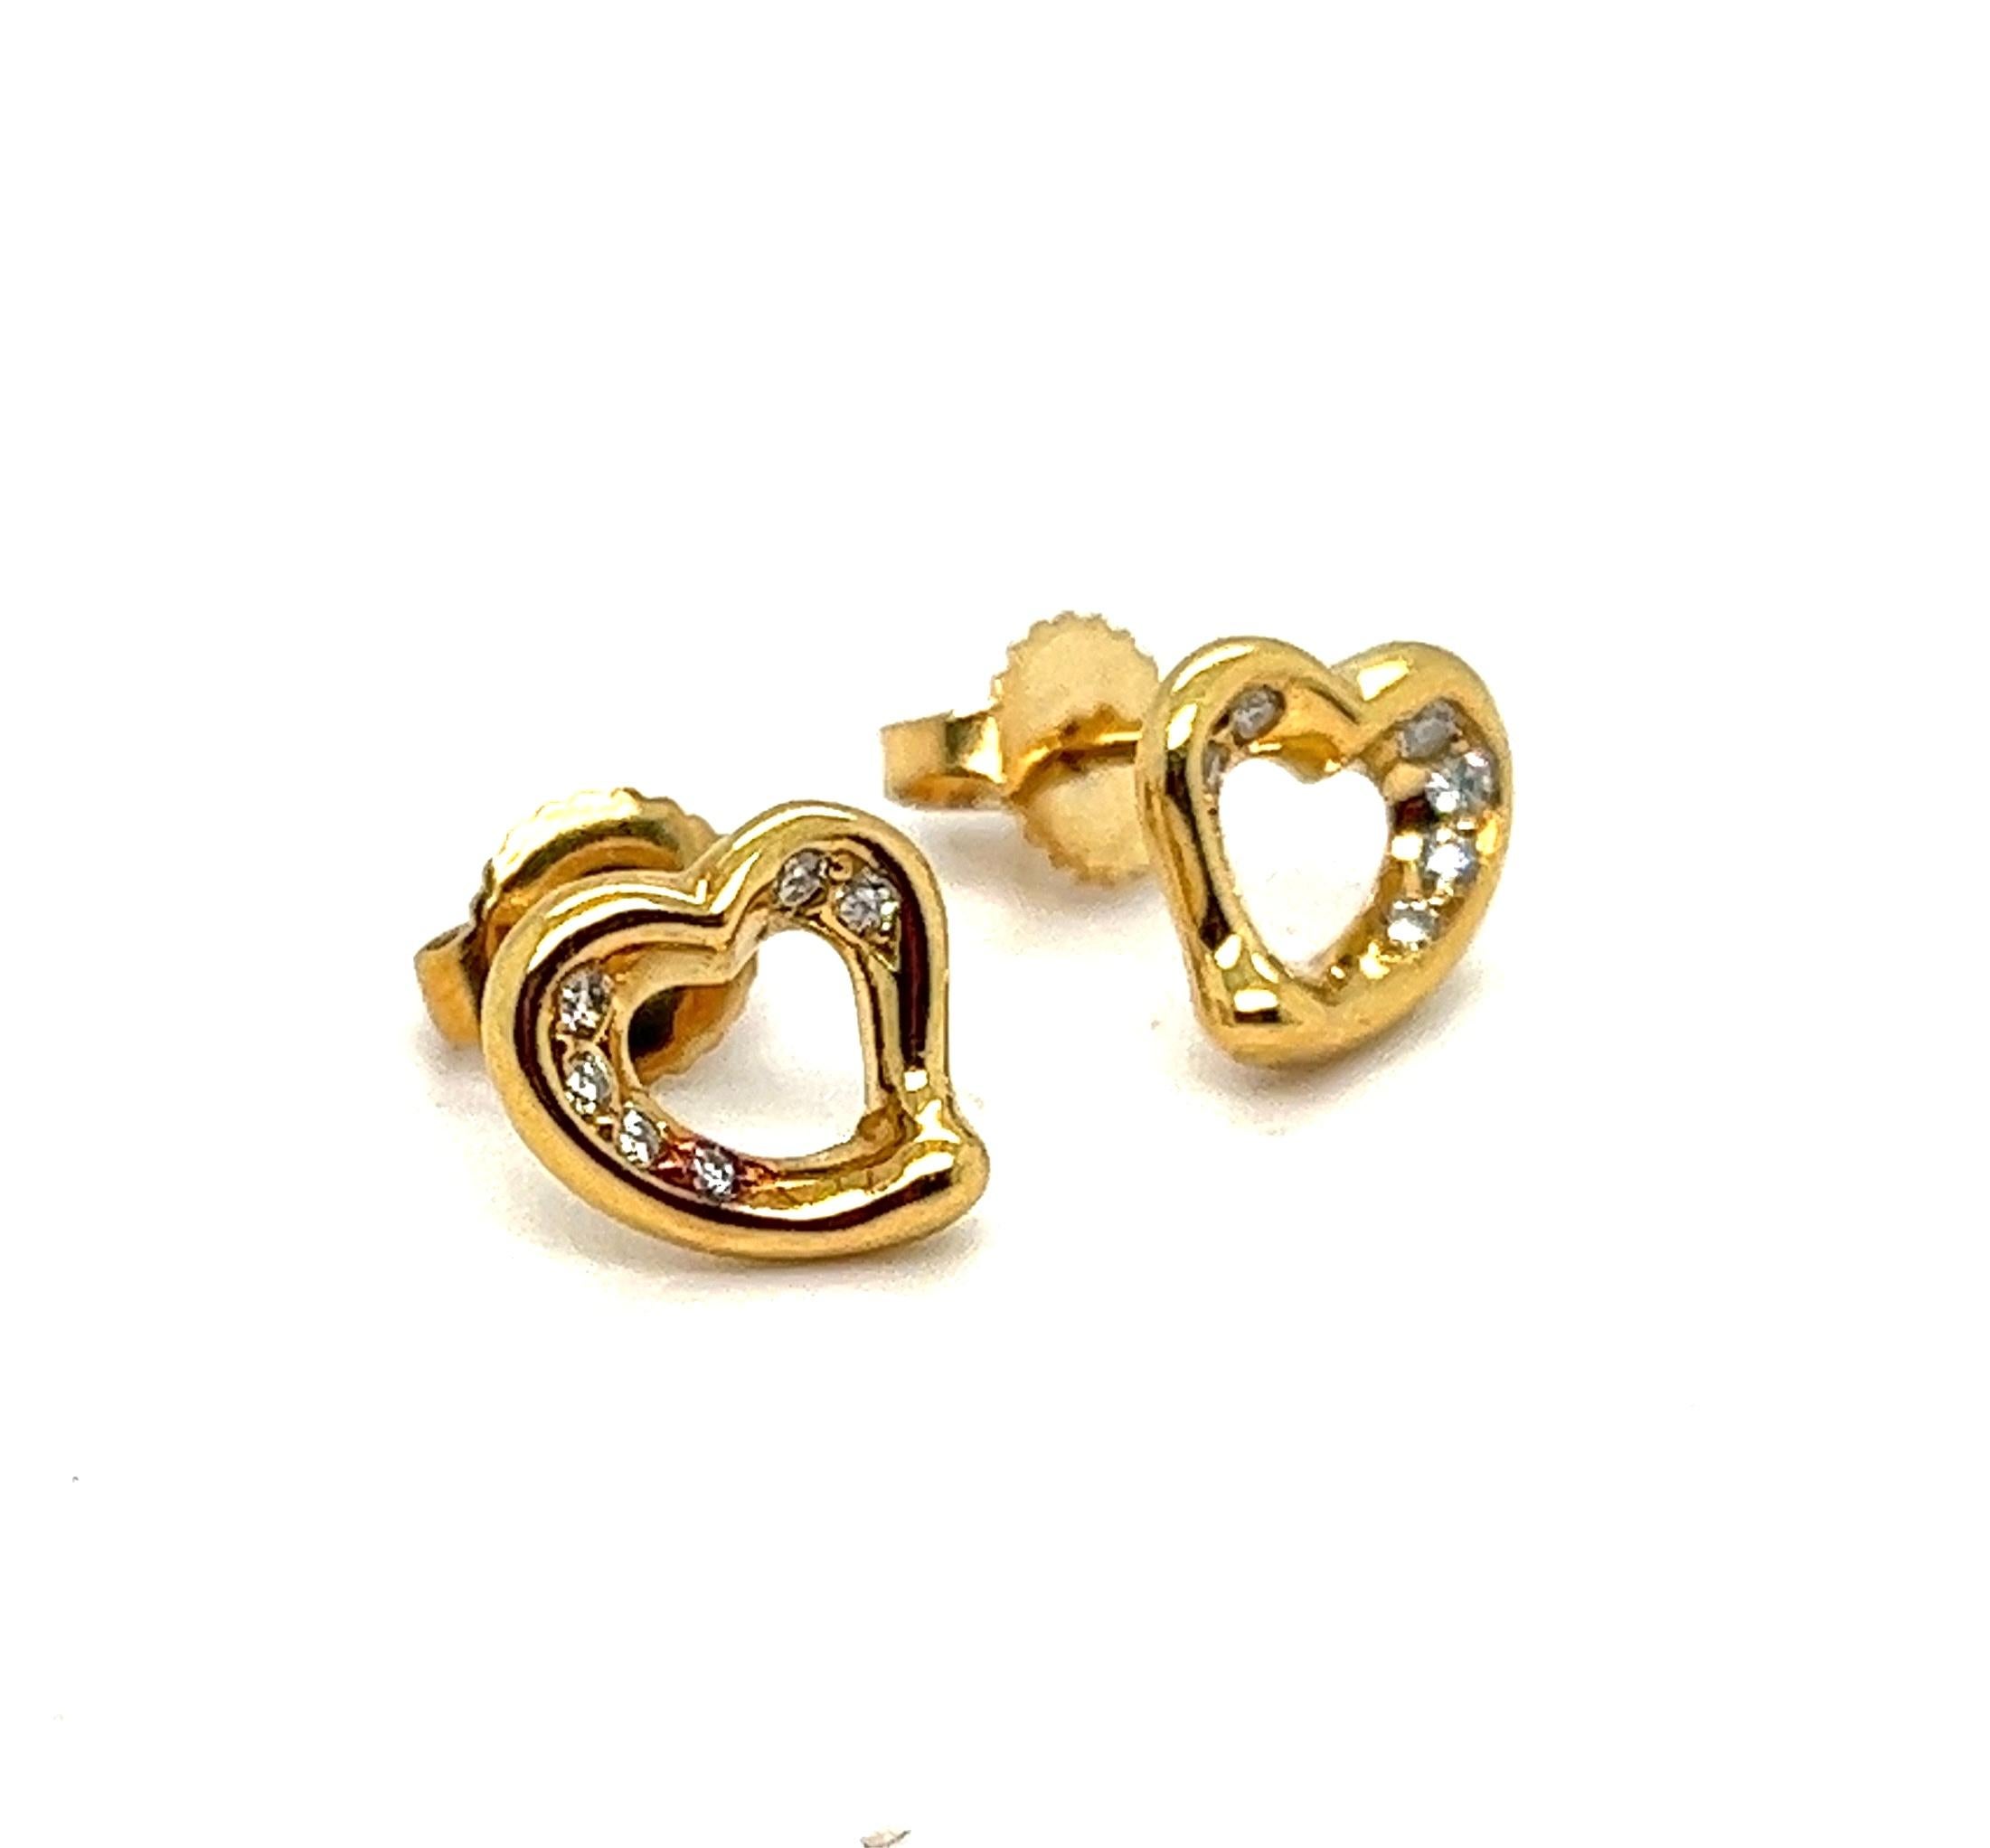 Nous vous proposons un authentique clou d'oreille à cœur ouvert de Tiffany & Co., orné de diamants de qualité supérieure.
Fabriqué en or jaune massif 18 carats, avec poussoirs pour oreilles percées.
La forme simple et évocatrice des designs à cœur